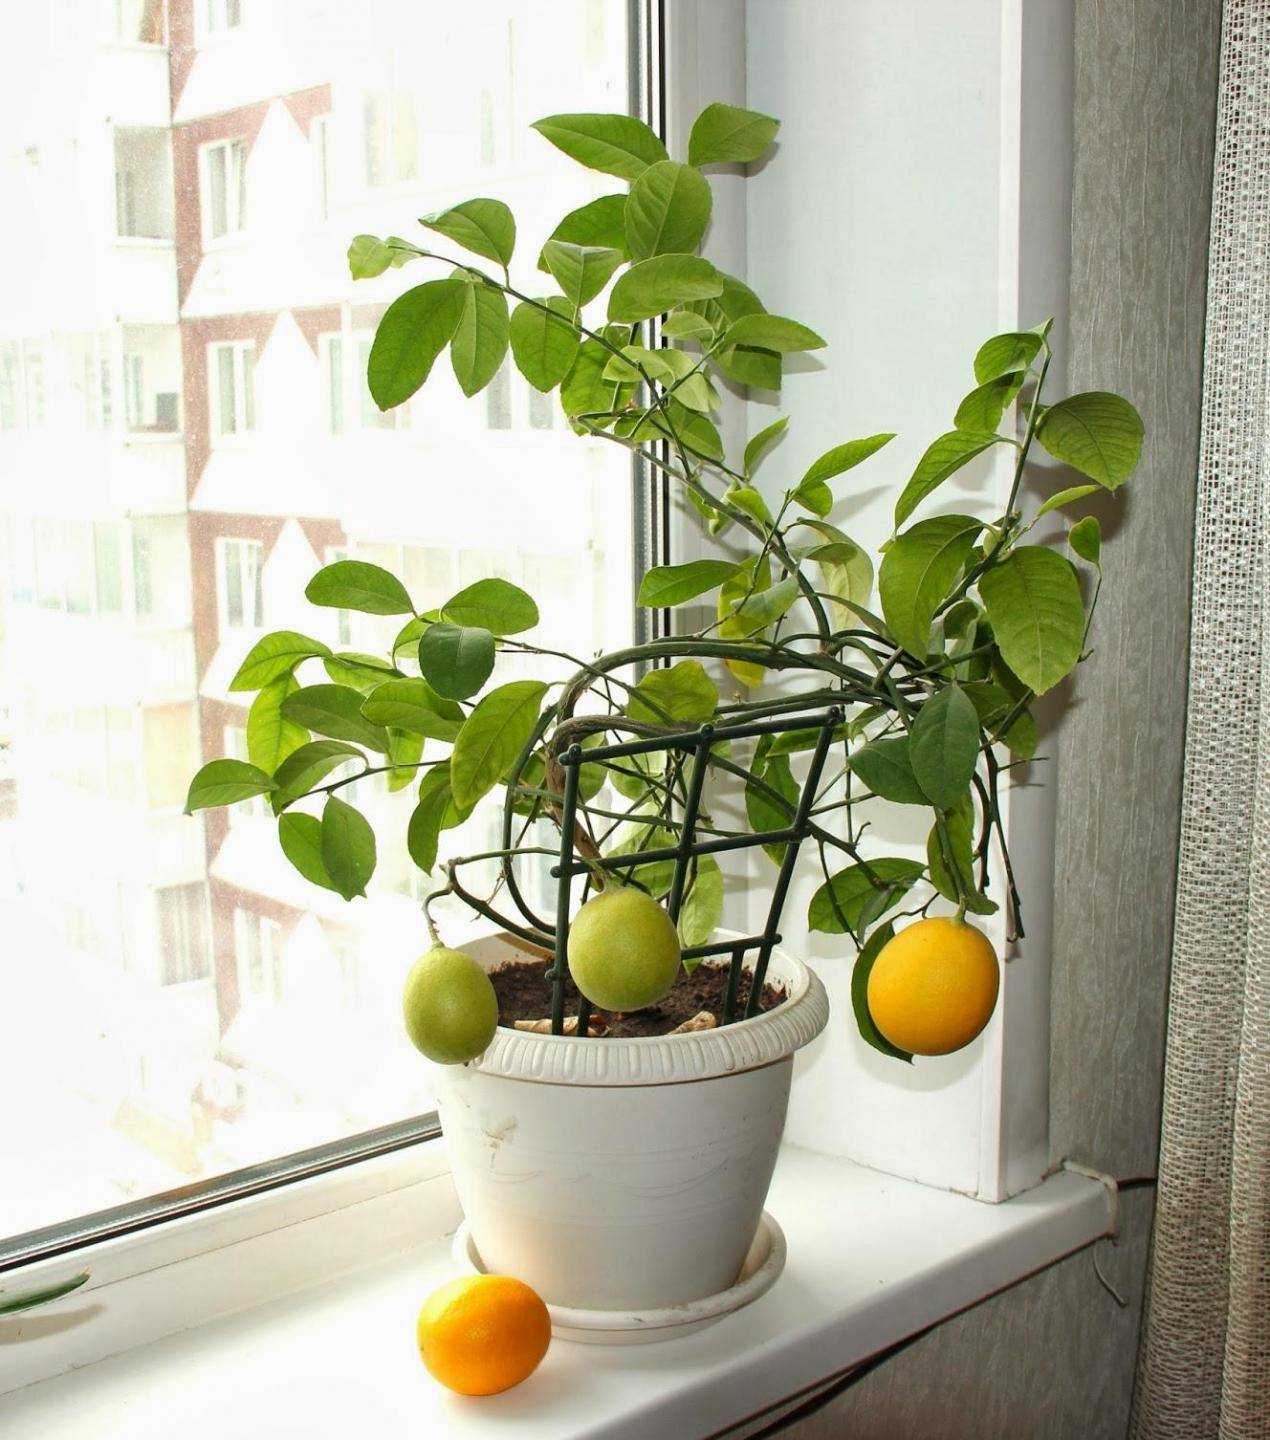 Лимон в комнатных условиях: выращивание и уход